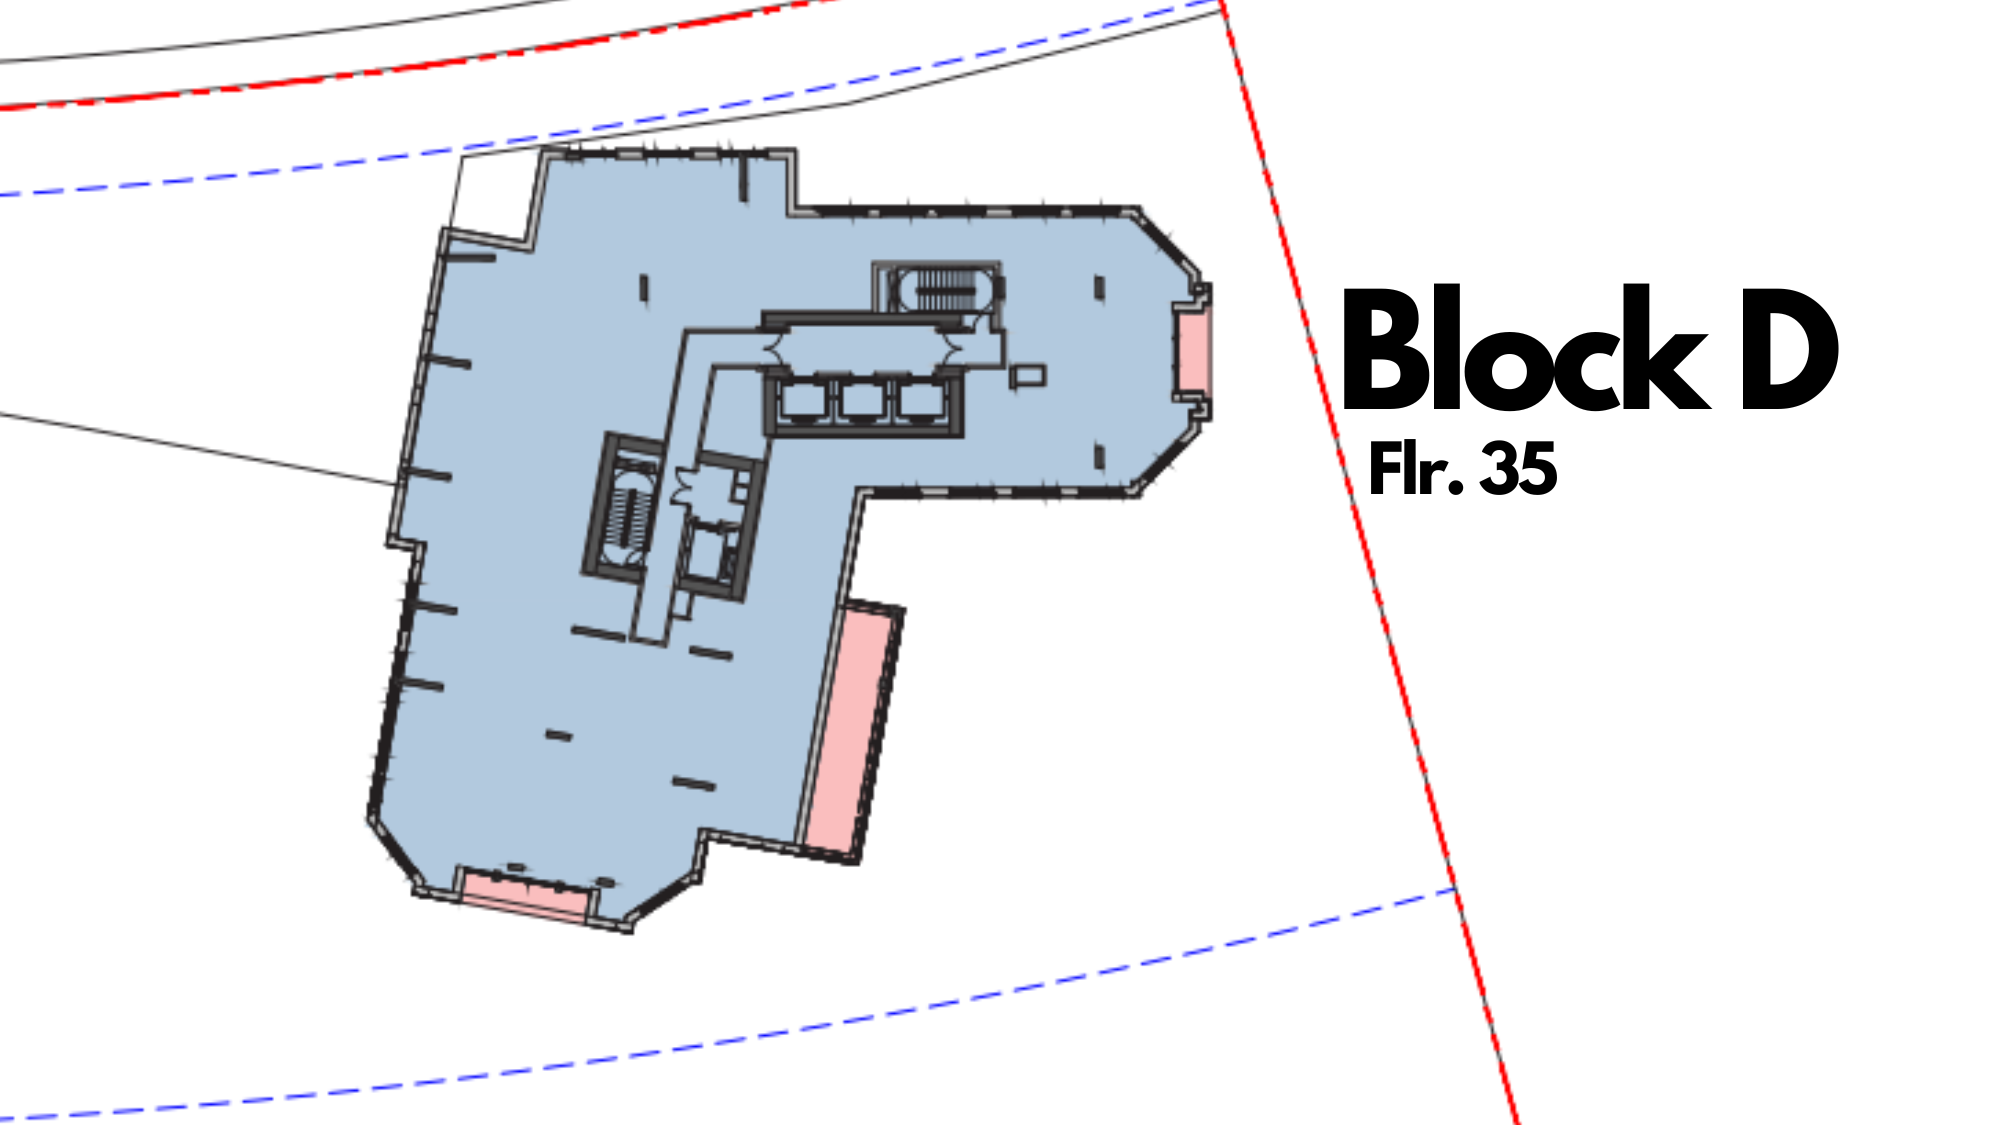 Block D Floor 35